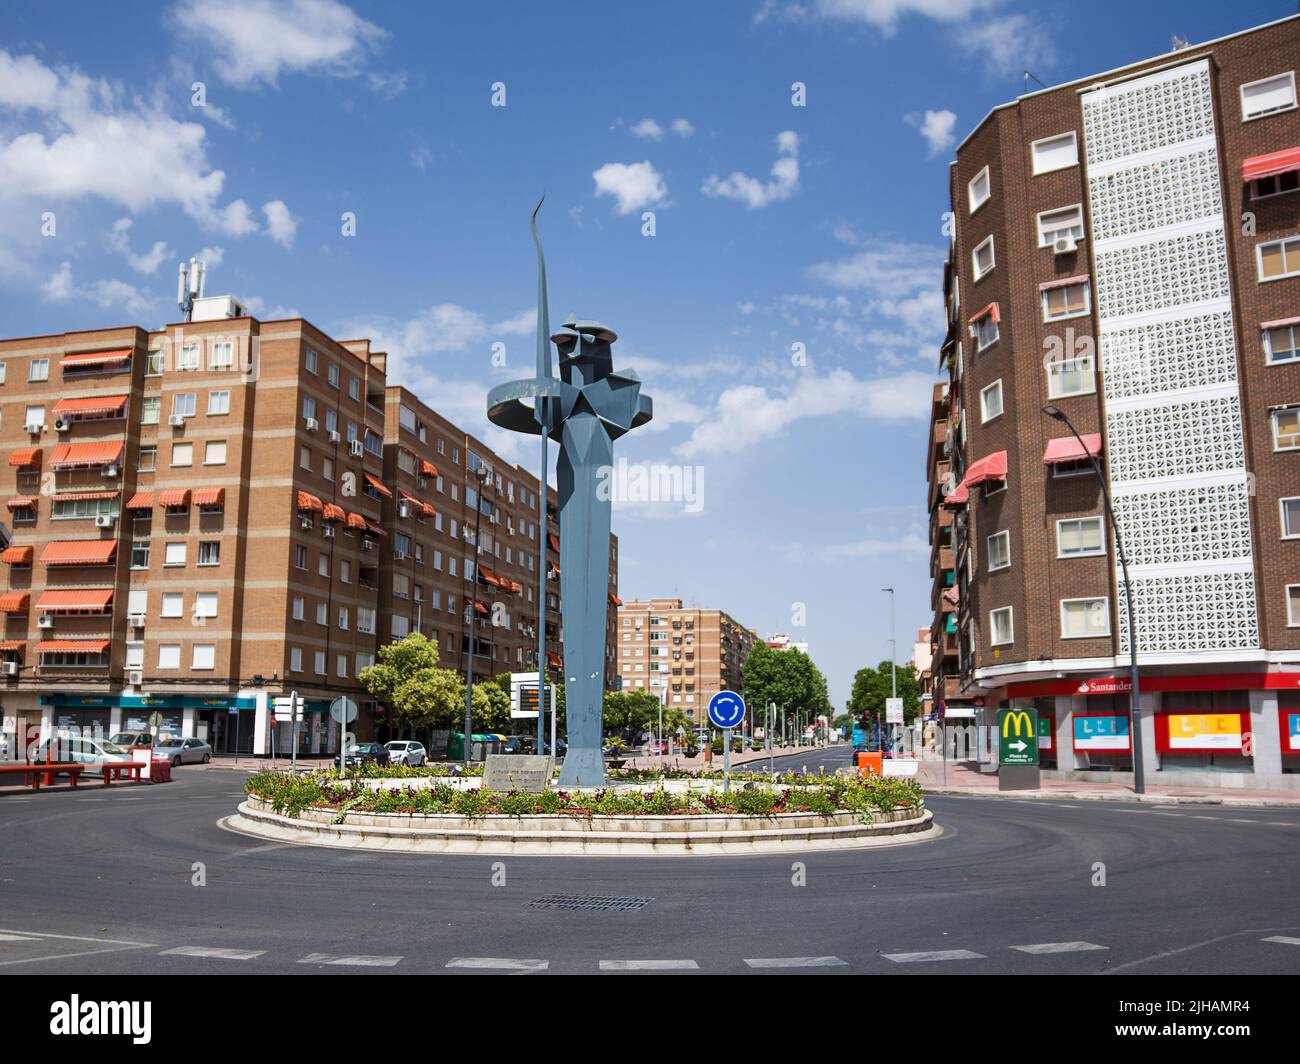 Alcalá de Henares, Spagna - 18 giugno 2022: Scultura stilizzata di Don Chisciotte di la Mancha in un crocevia della città natale dello scrittore Cervantes Foto Stock